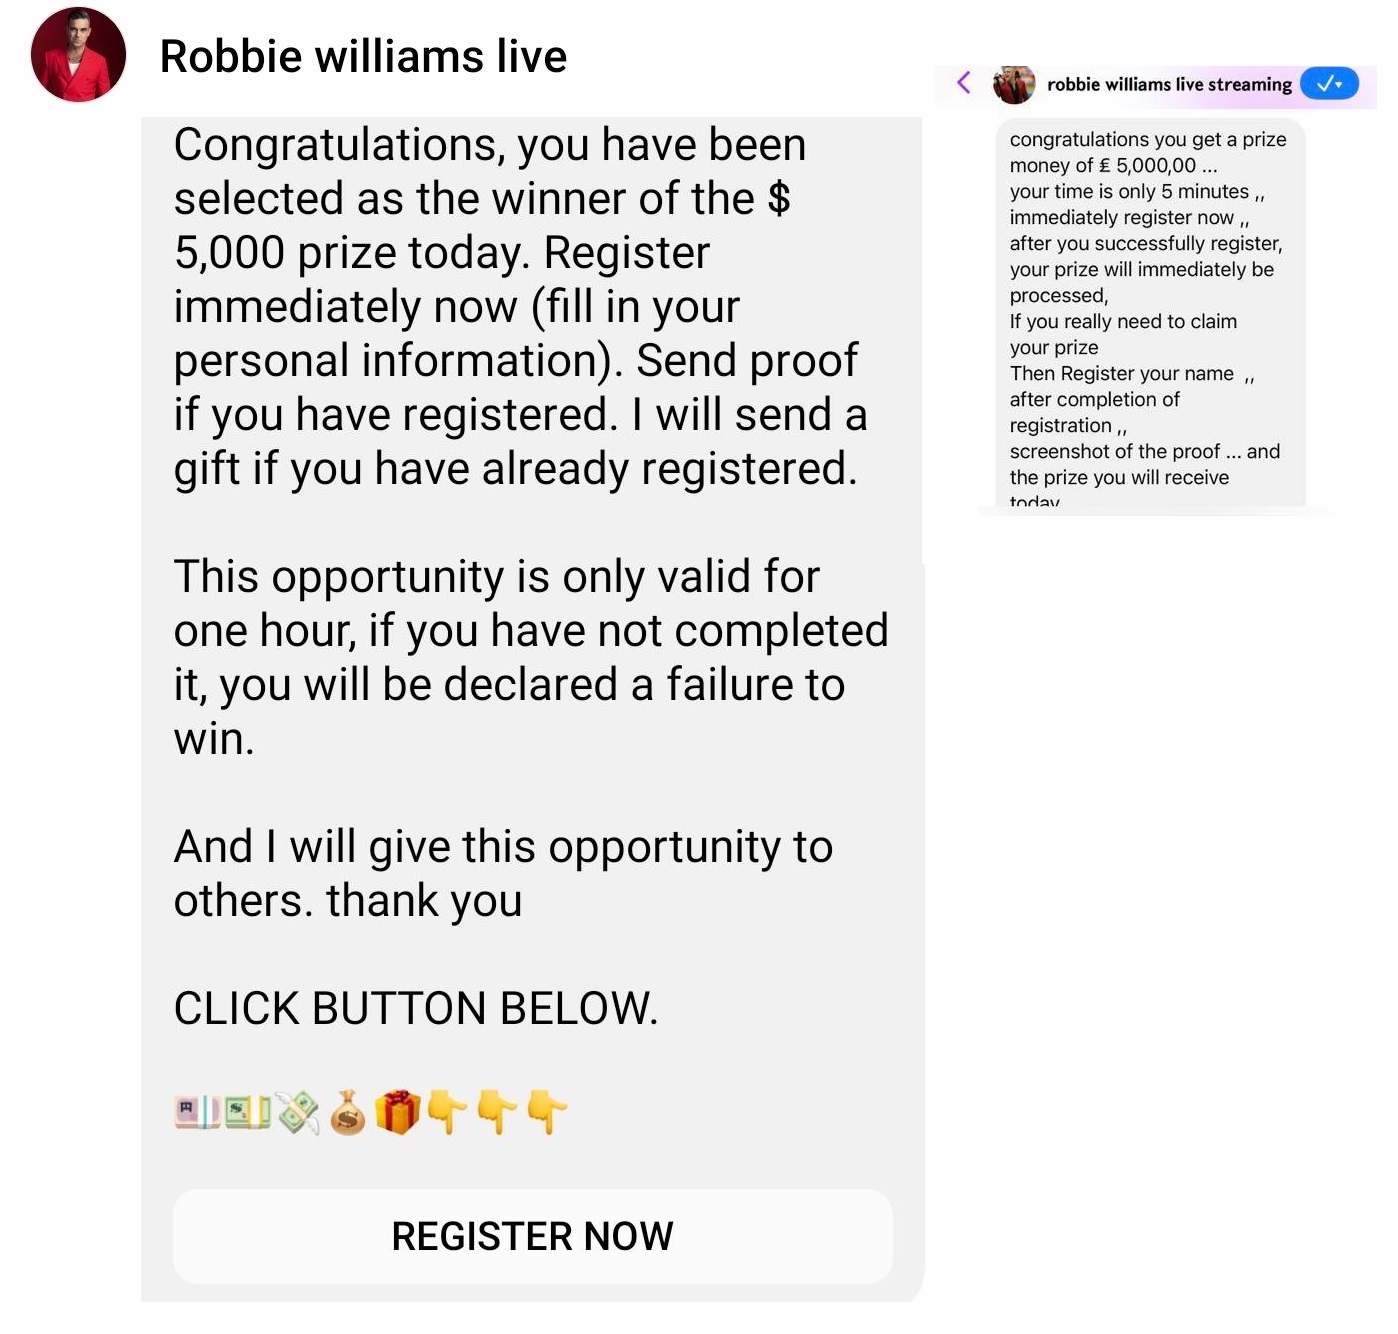 Robbie Williams Facebook Scam